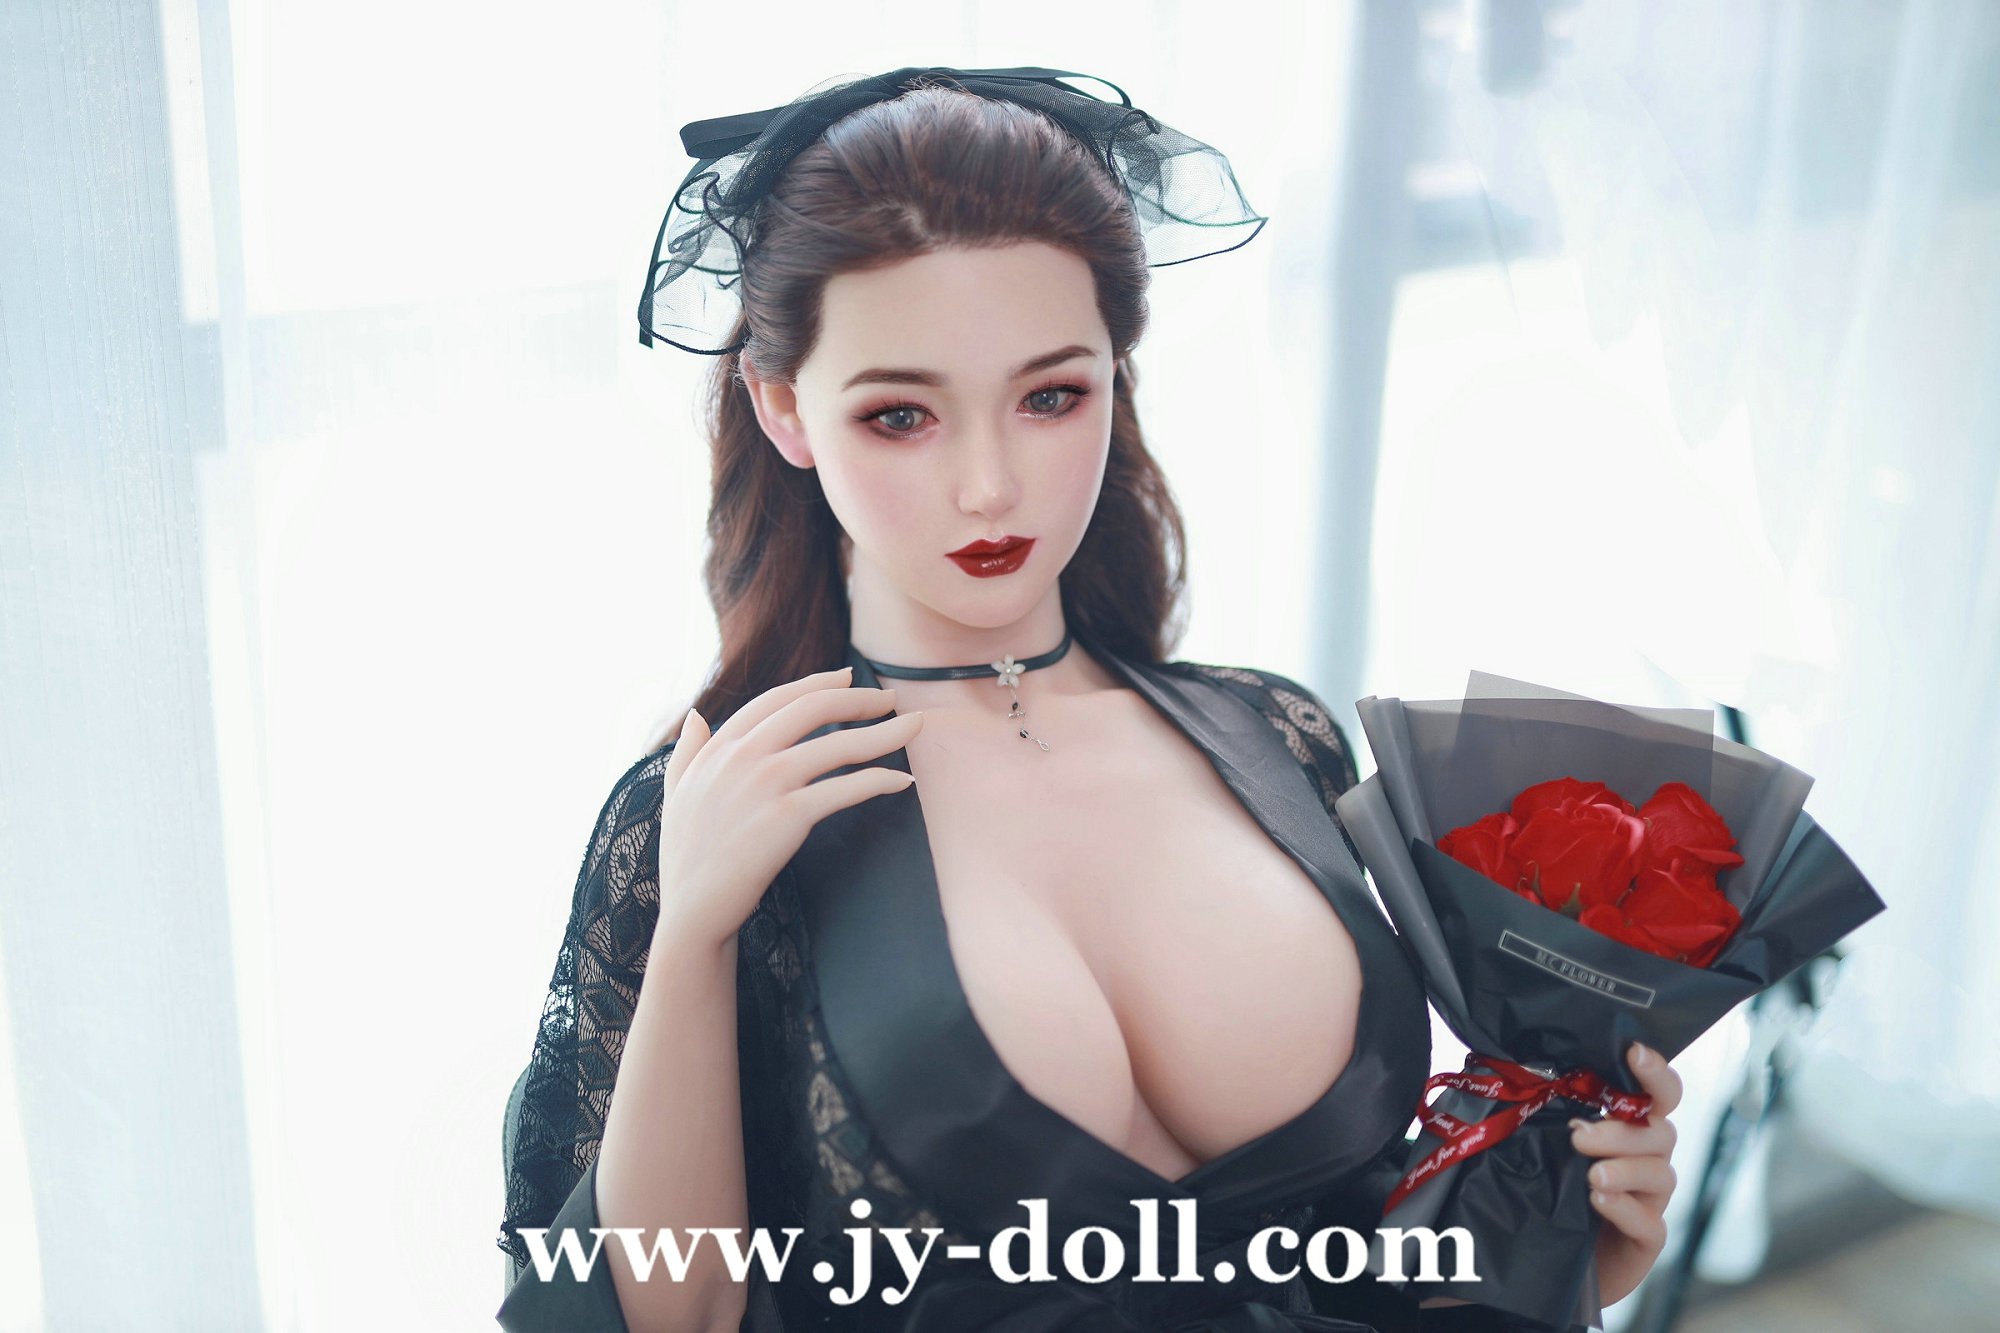 JYDOLL 165cm BIG BREASTS Joe Sex Doll with silicone head